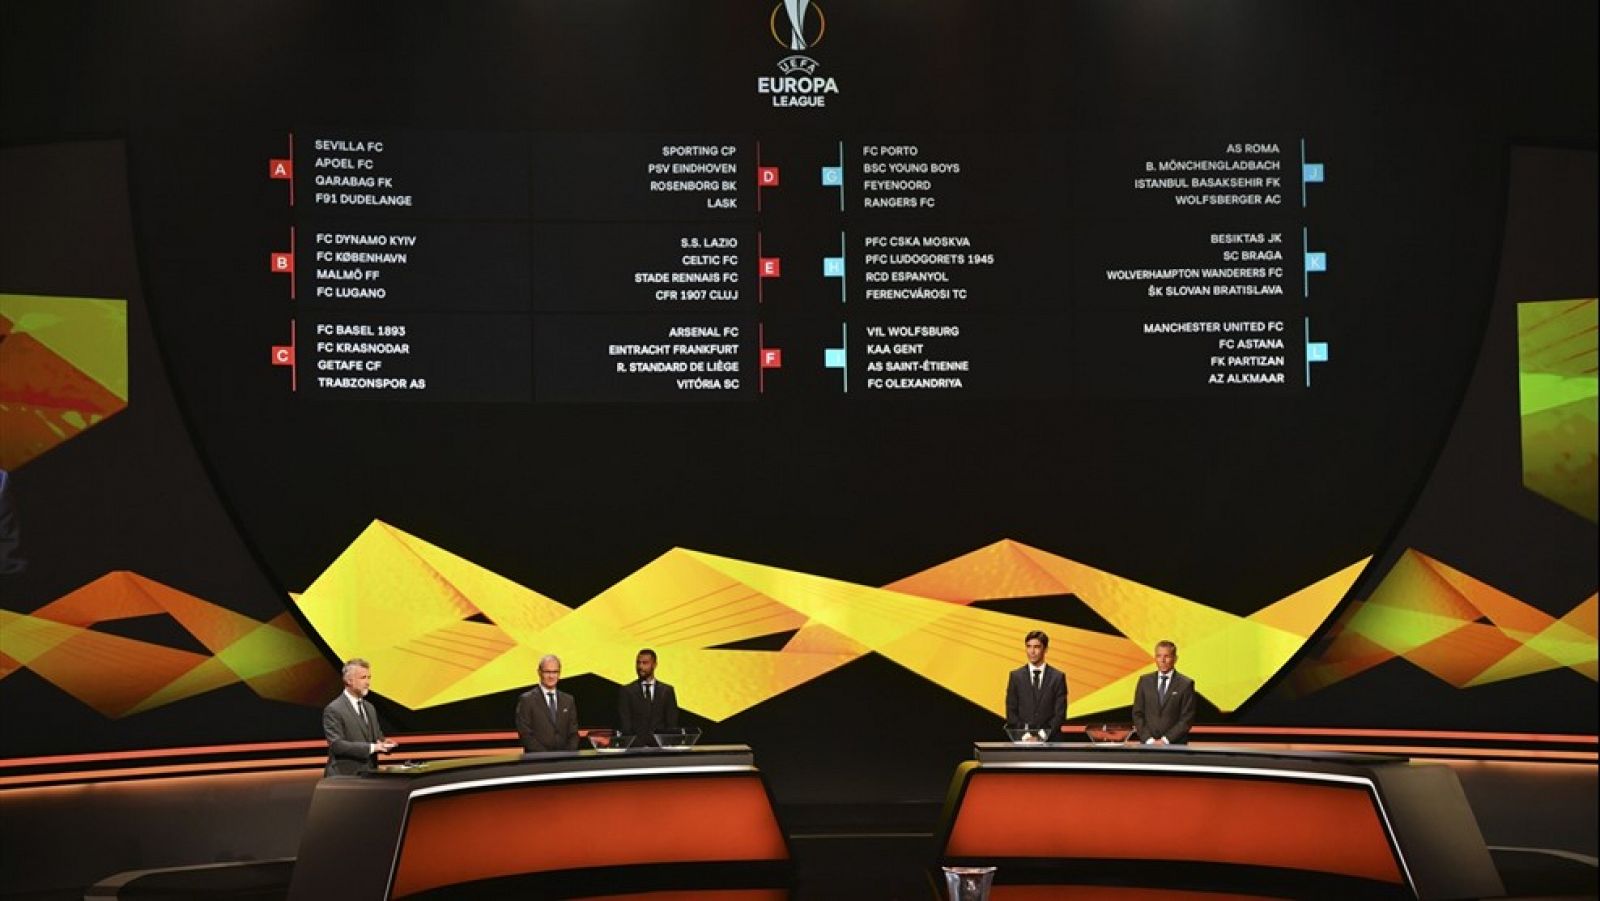 Europa League: Imagen del sorteo celebrado este viernes en Mónaco